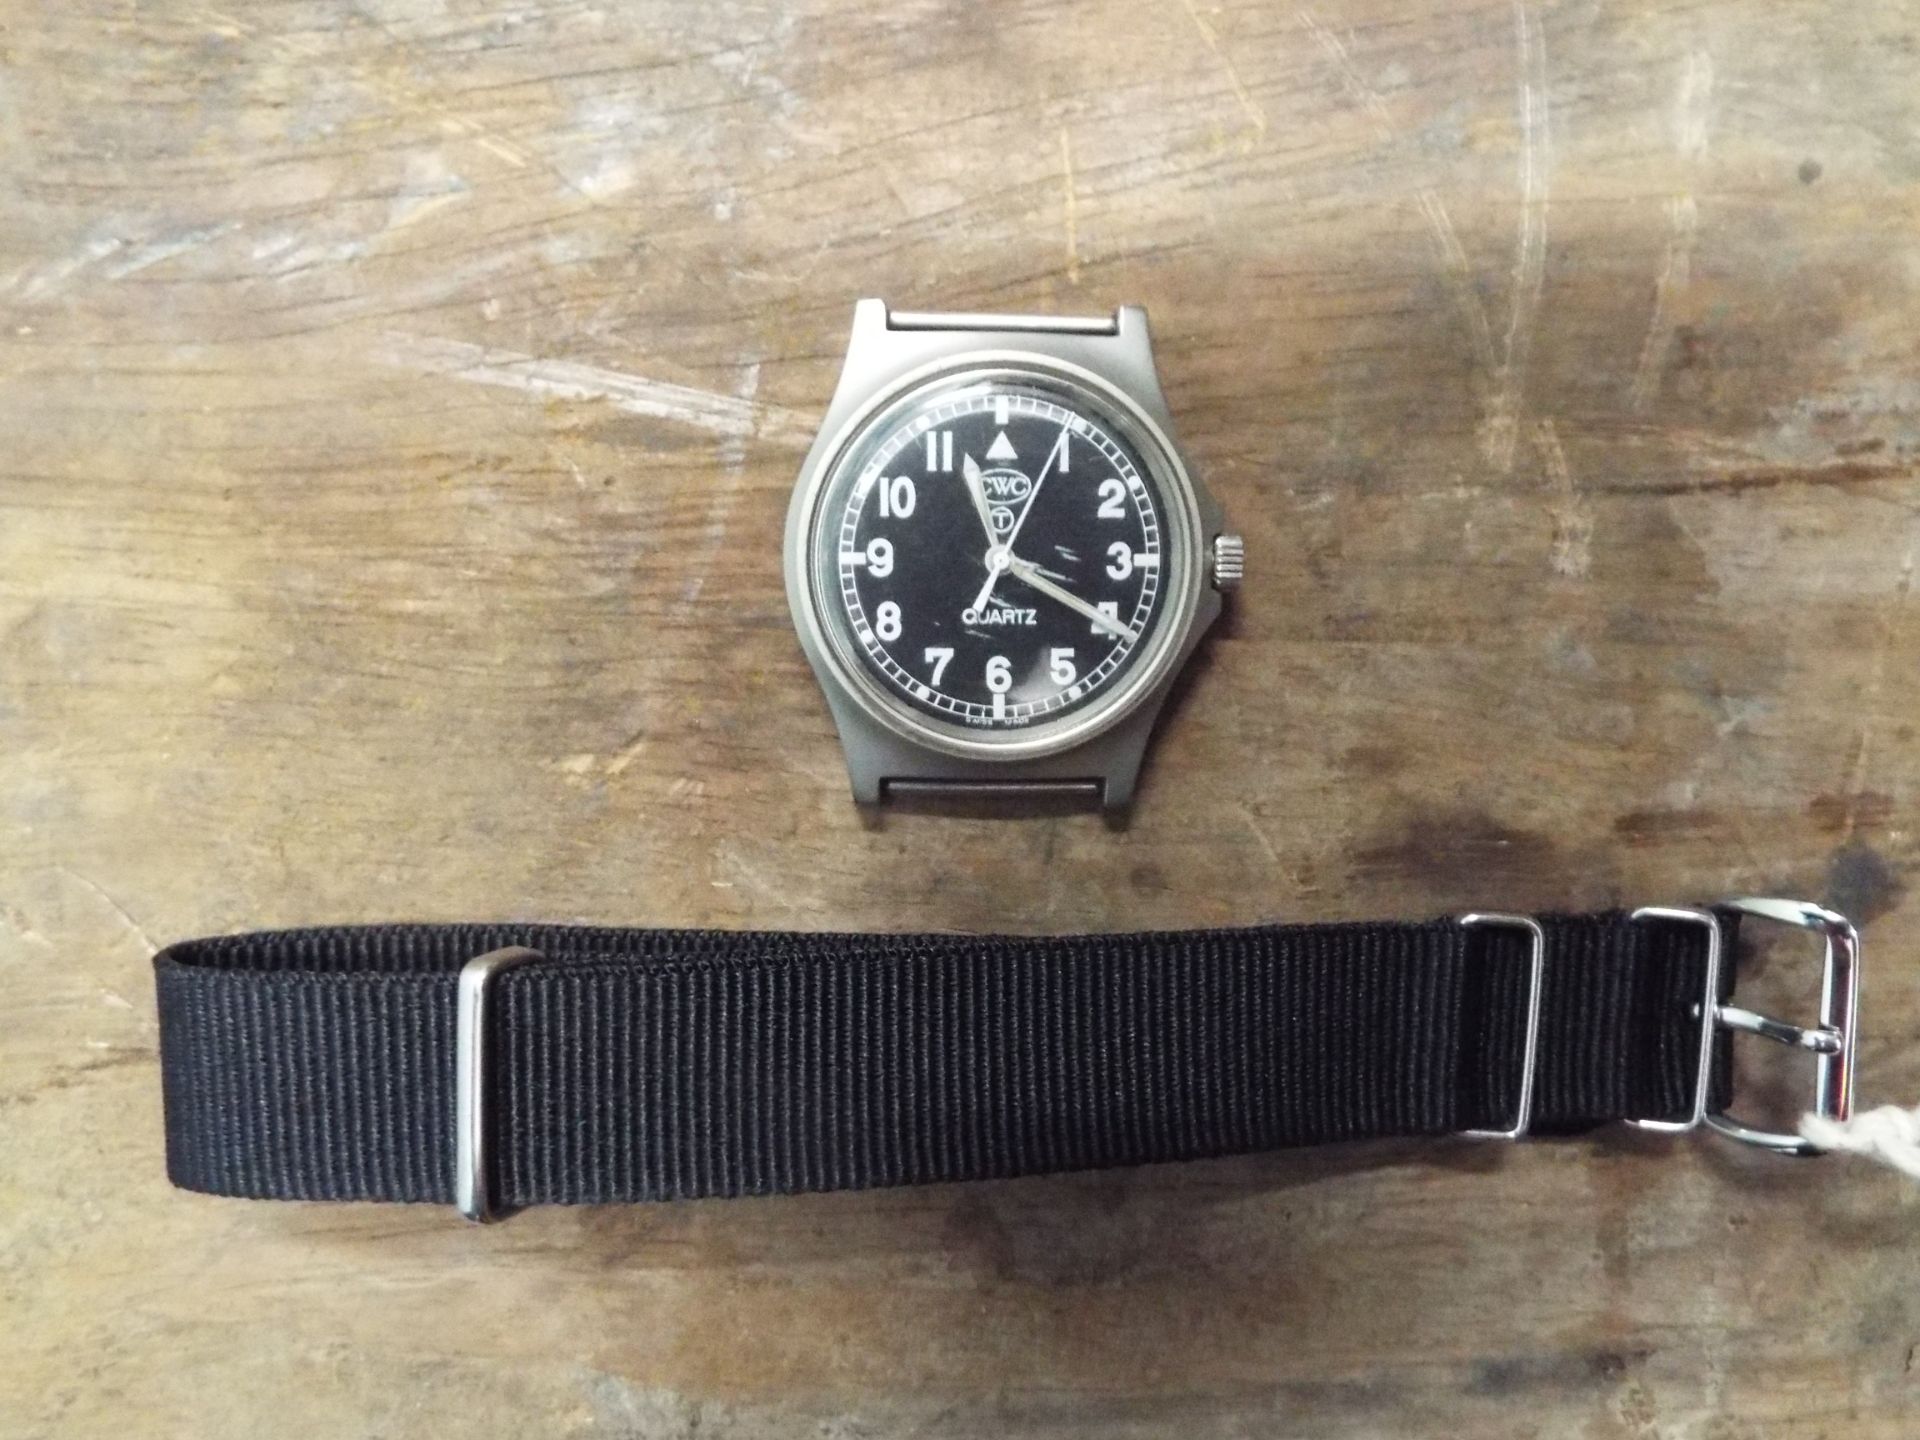 Very Rare Genuine British Army, Waterproof CWC Quartz Wrist Watch - Image 5 of 6